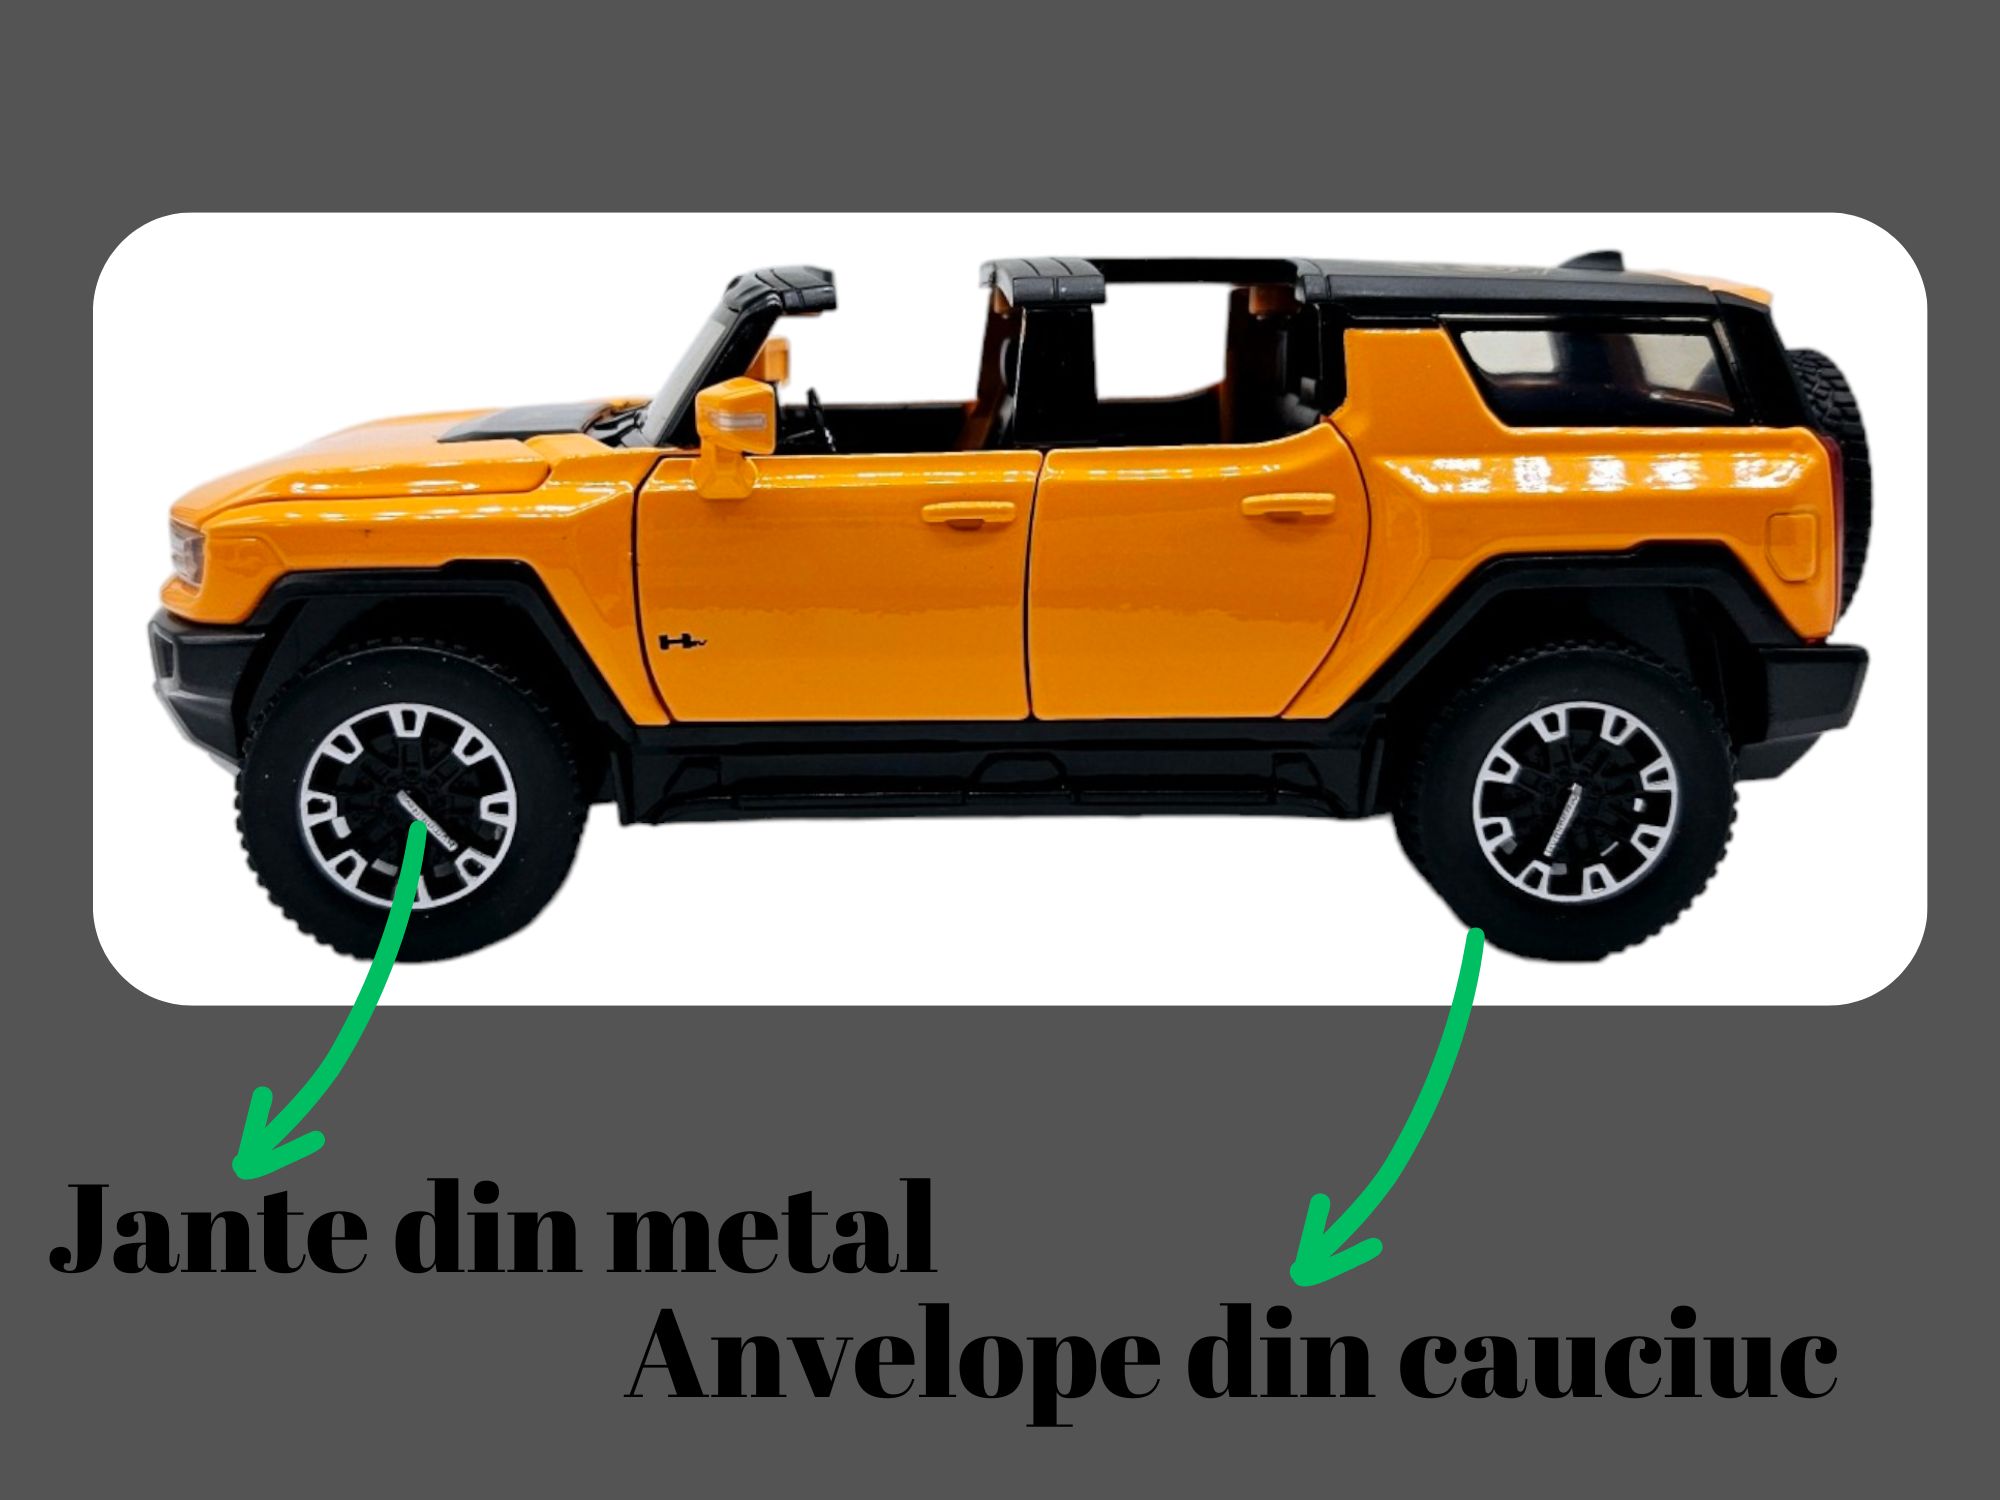 Masina metalica Hummer EV cu figurina,Sunete si lumini 16cm,Portocaliu